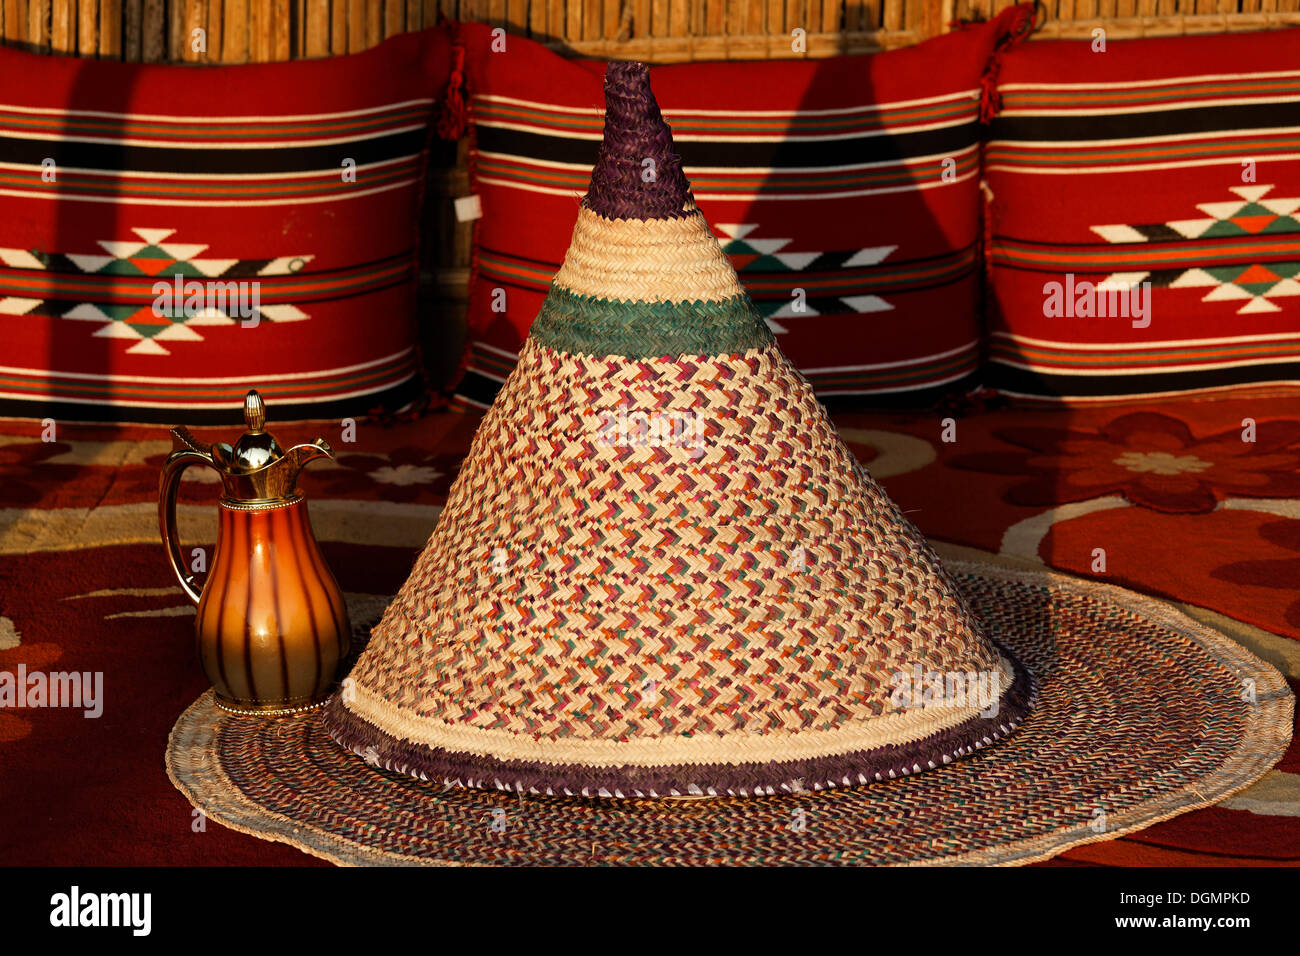 Geflochtene Kegel als Schutz für Lebensmittel, Beduinen-Hütte im Heritage Village, Dubai, Vereinigte Arabische Emirate, Naher Osten, Asien Stockfoto